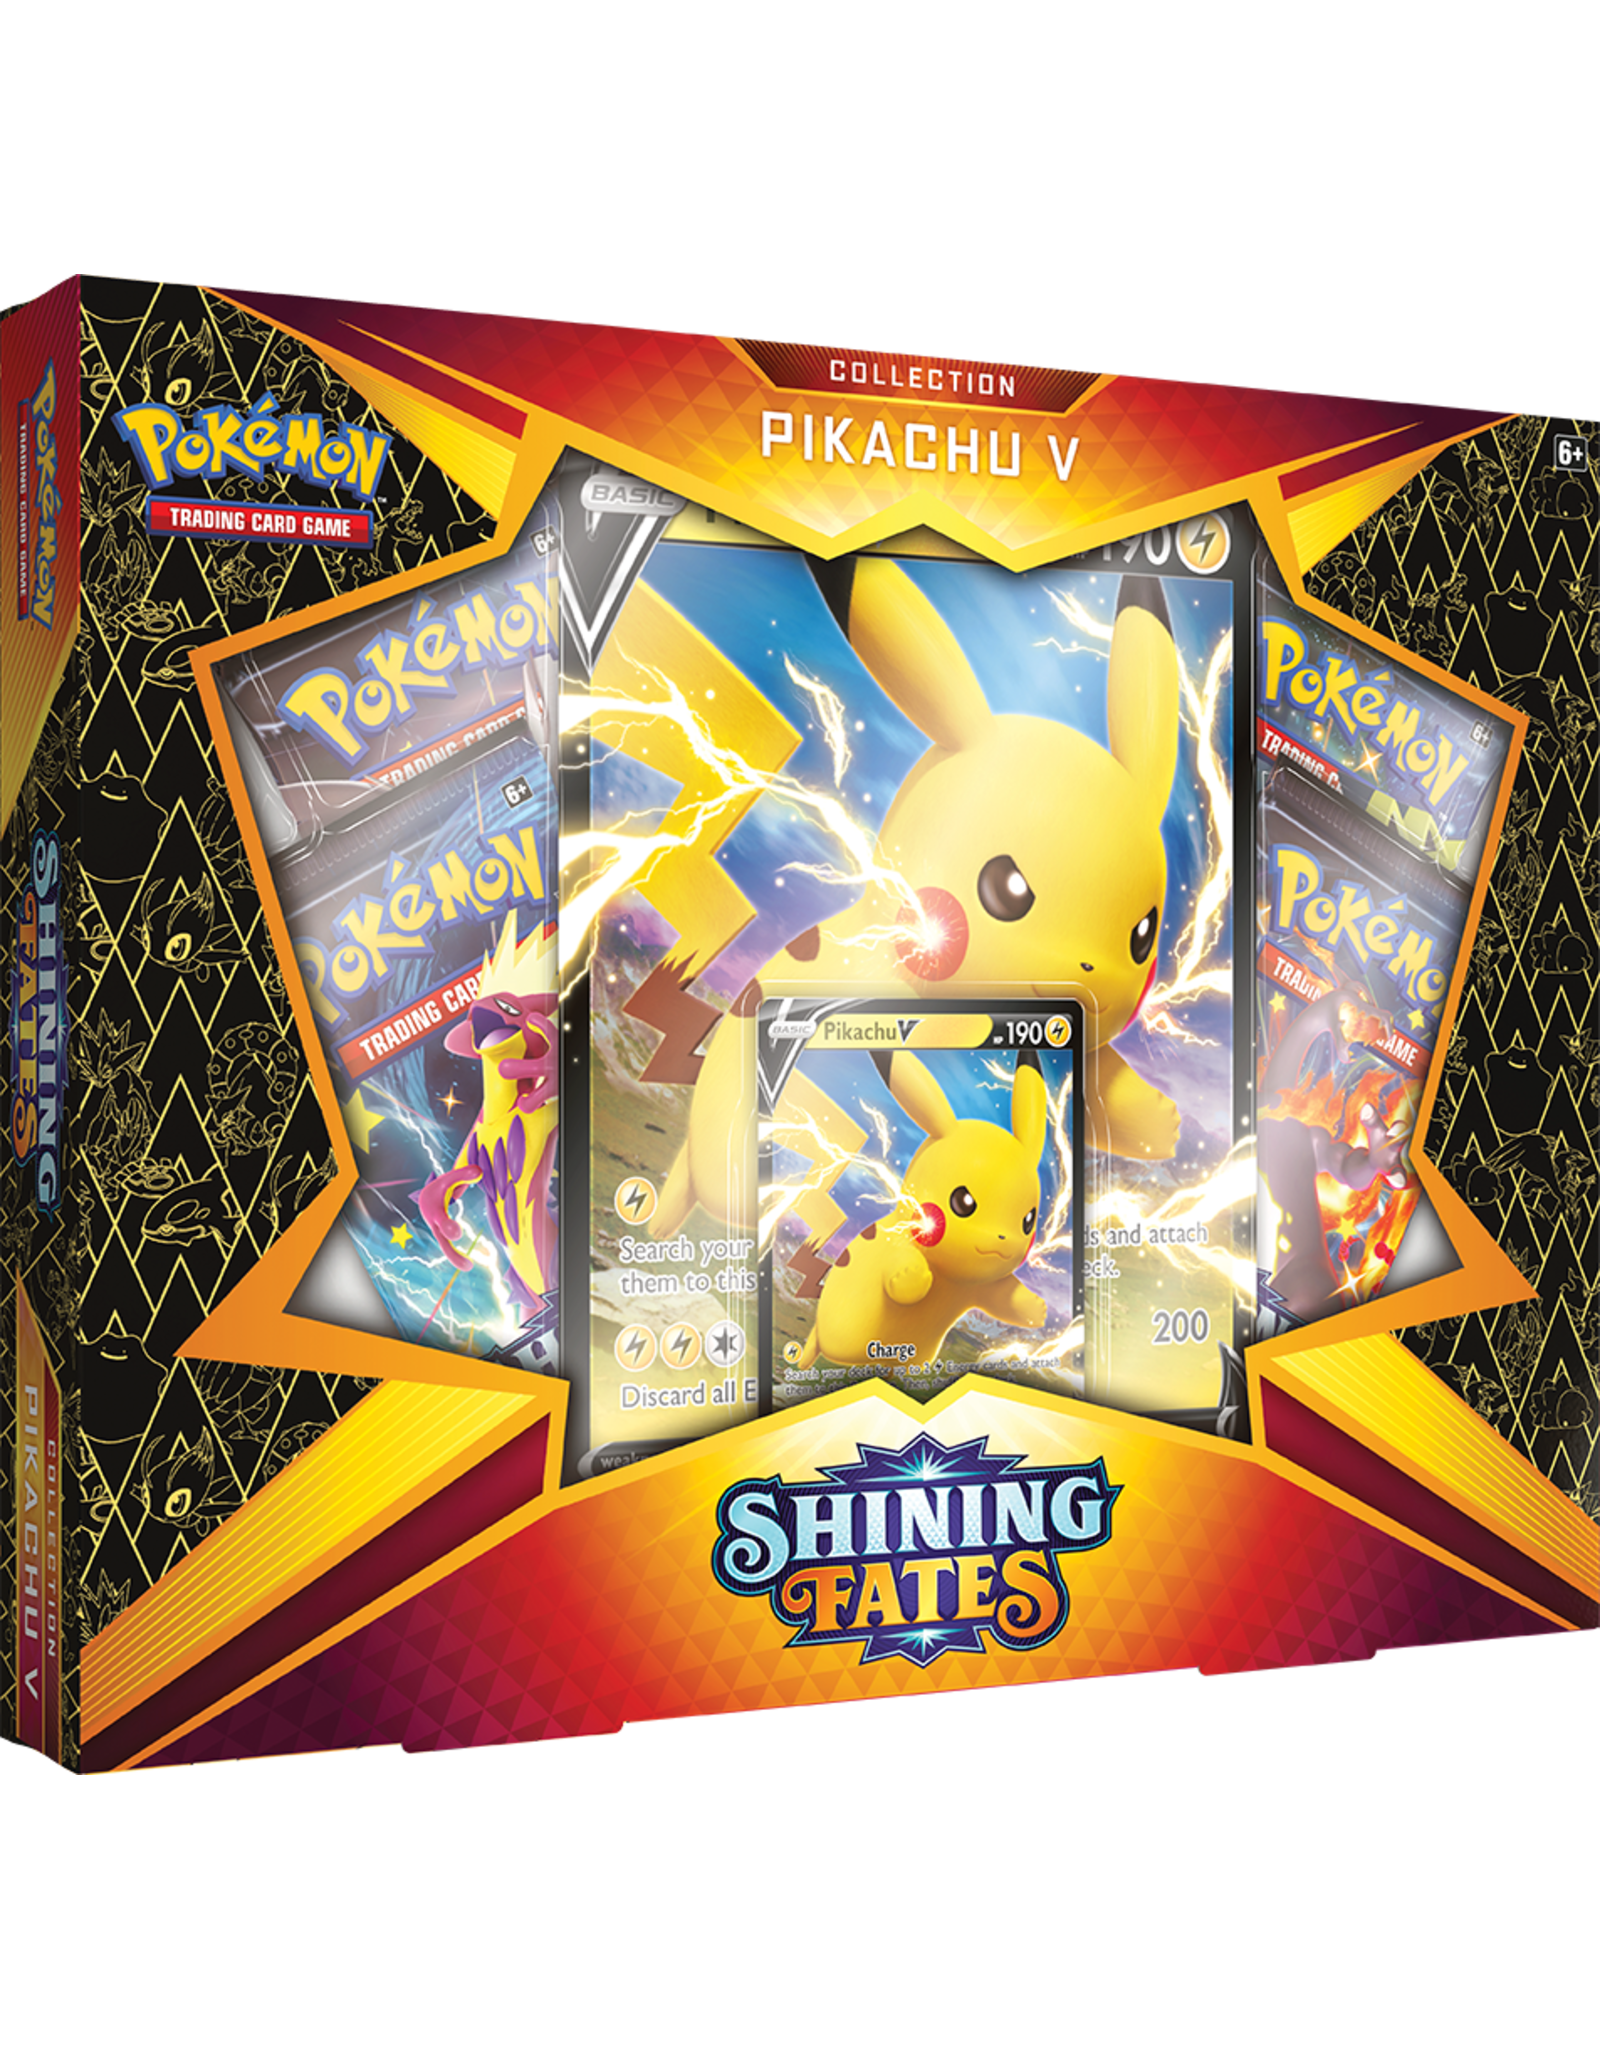 Shining Fates Pikachu V Collection Legendarycards Eu